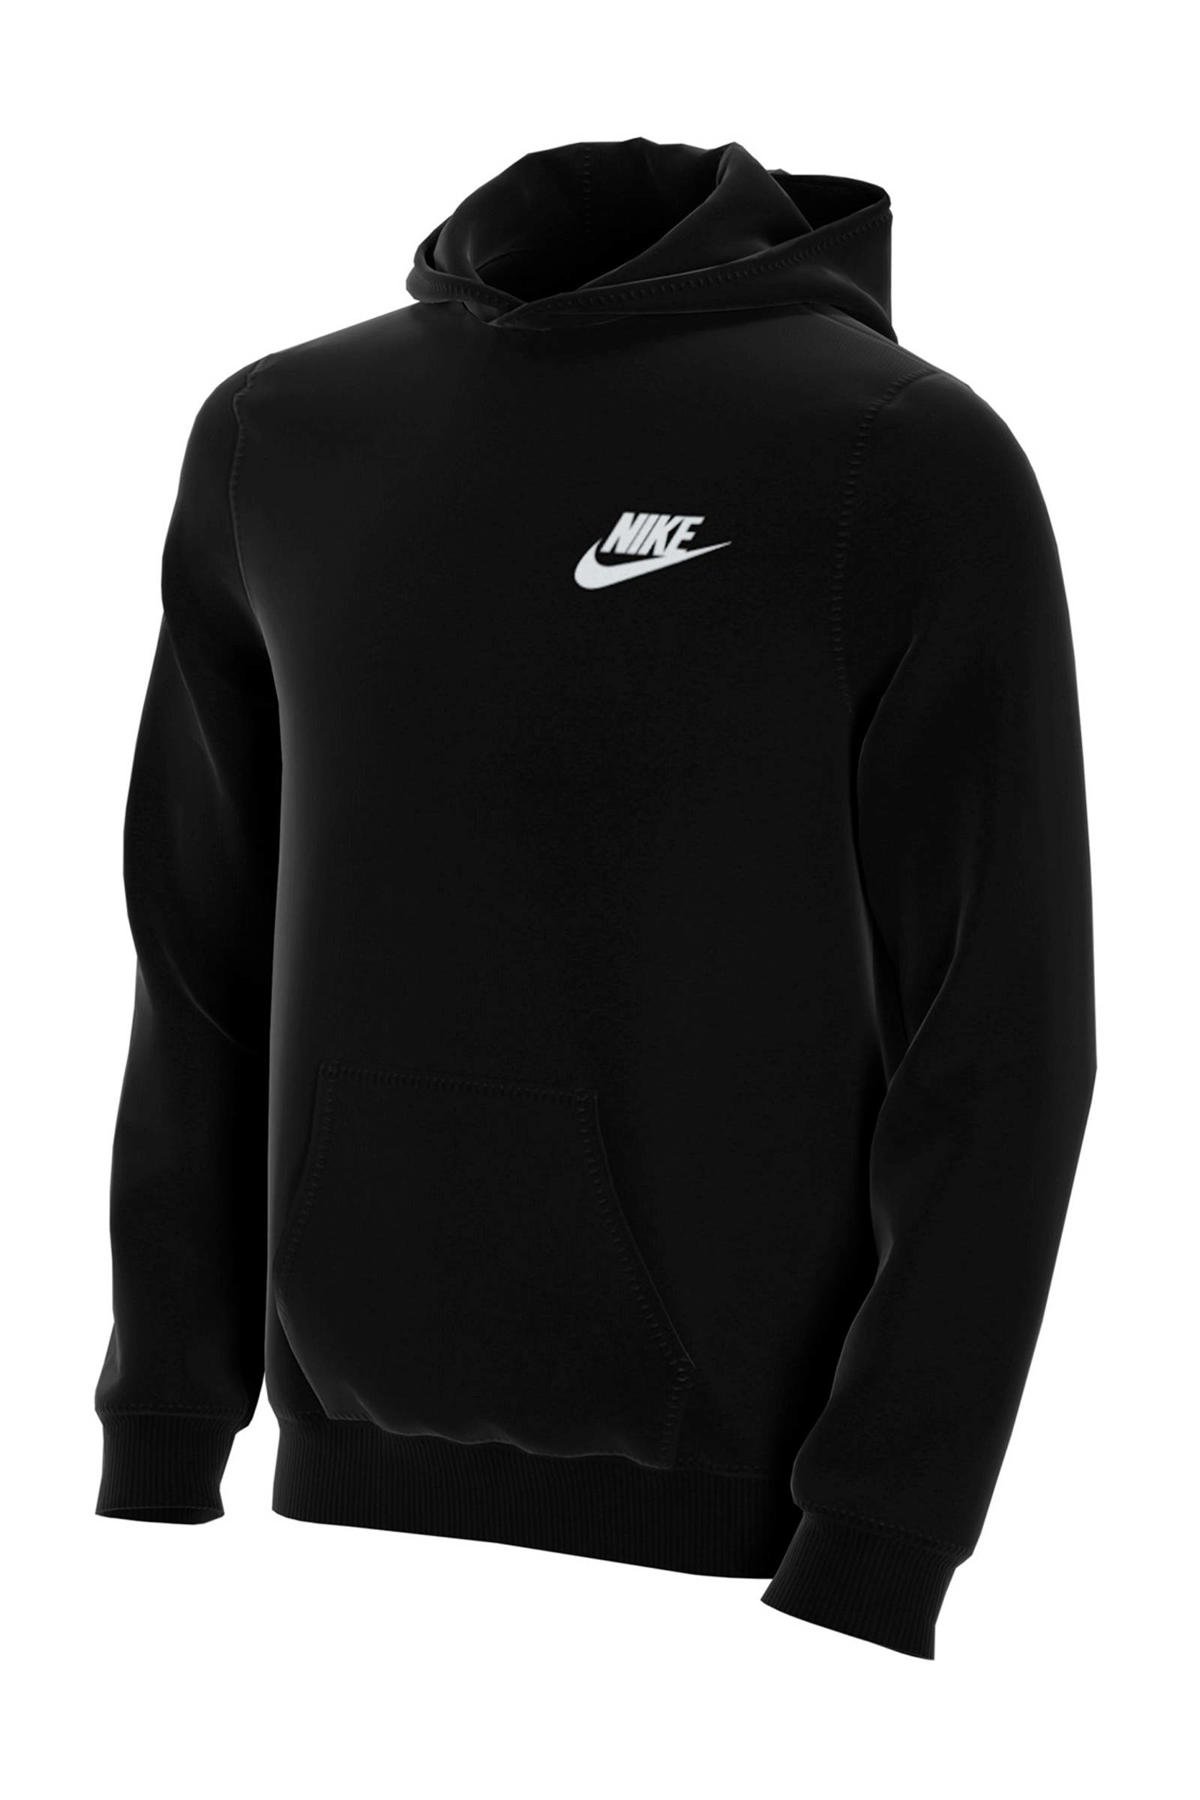 Kilauea Mountain Overredend dealer Nike hoodie zwart kopen? | Morgen in huis | wehkamp